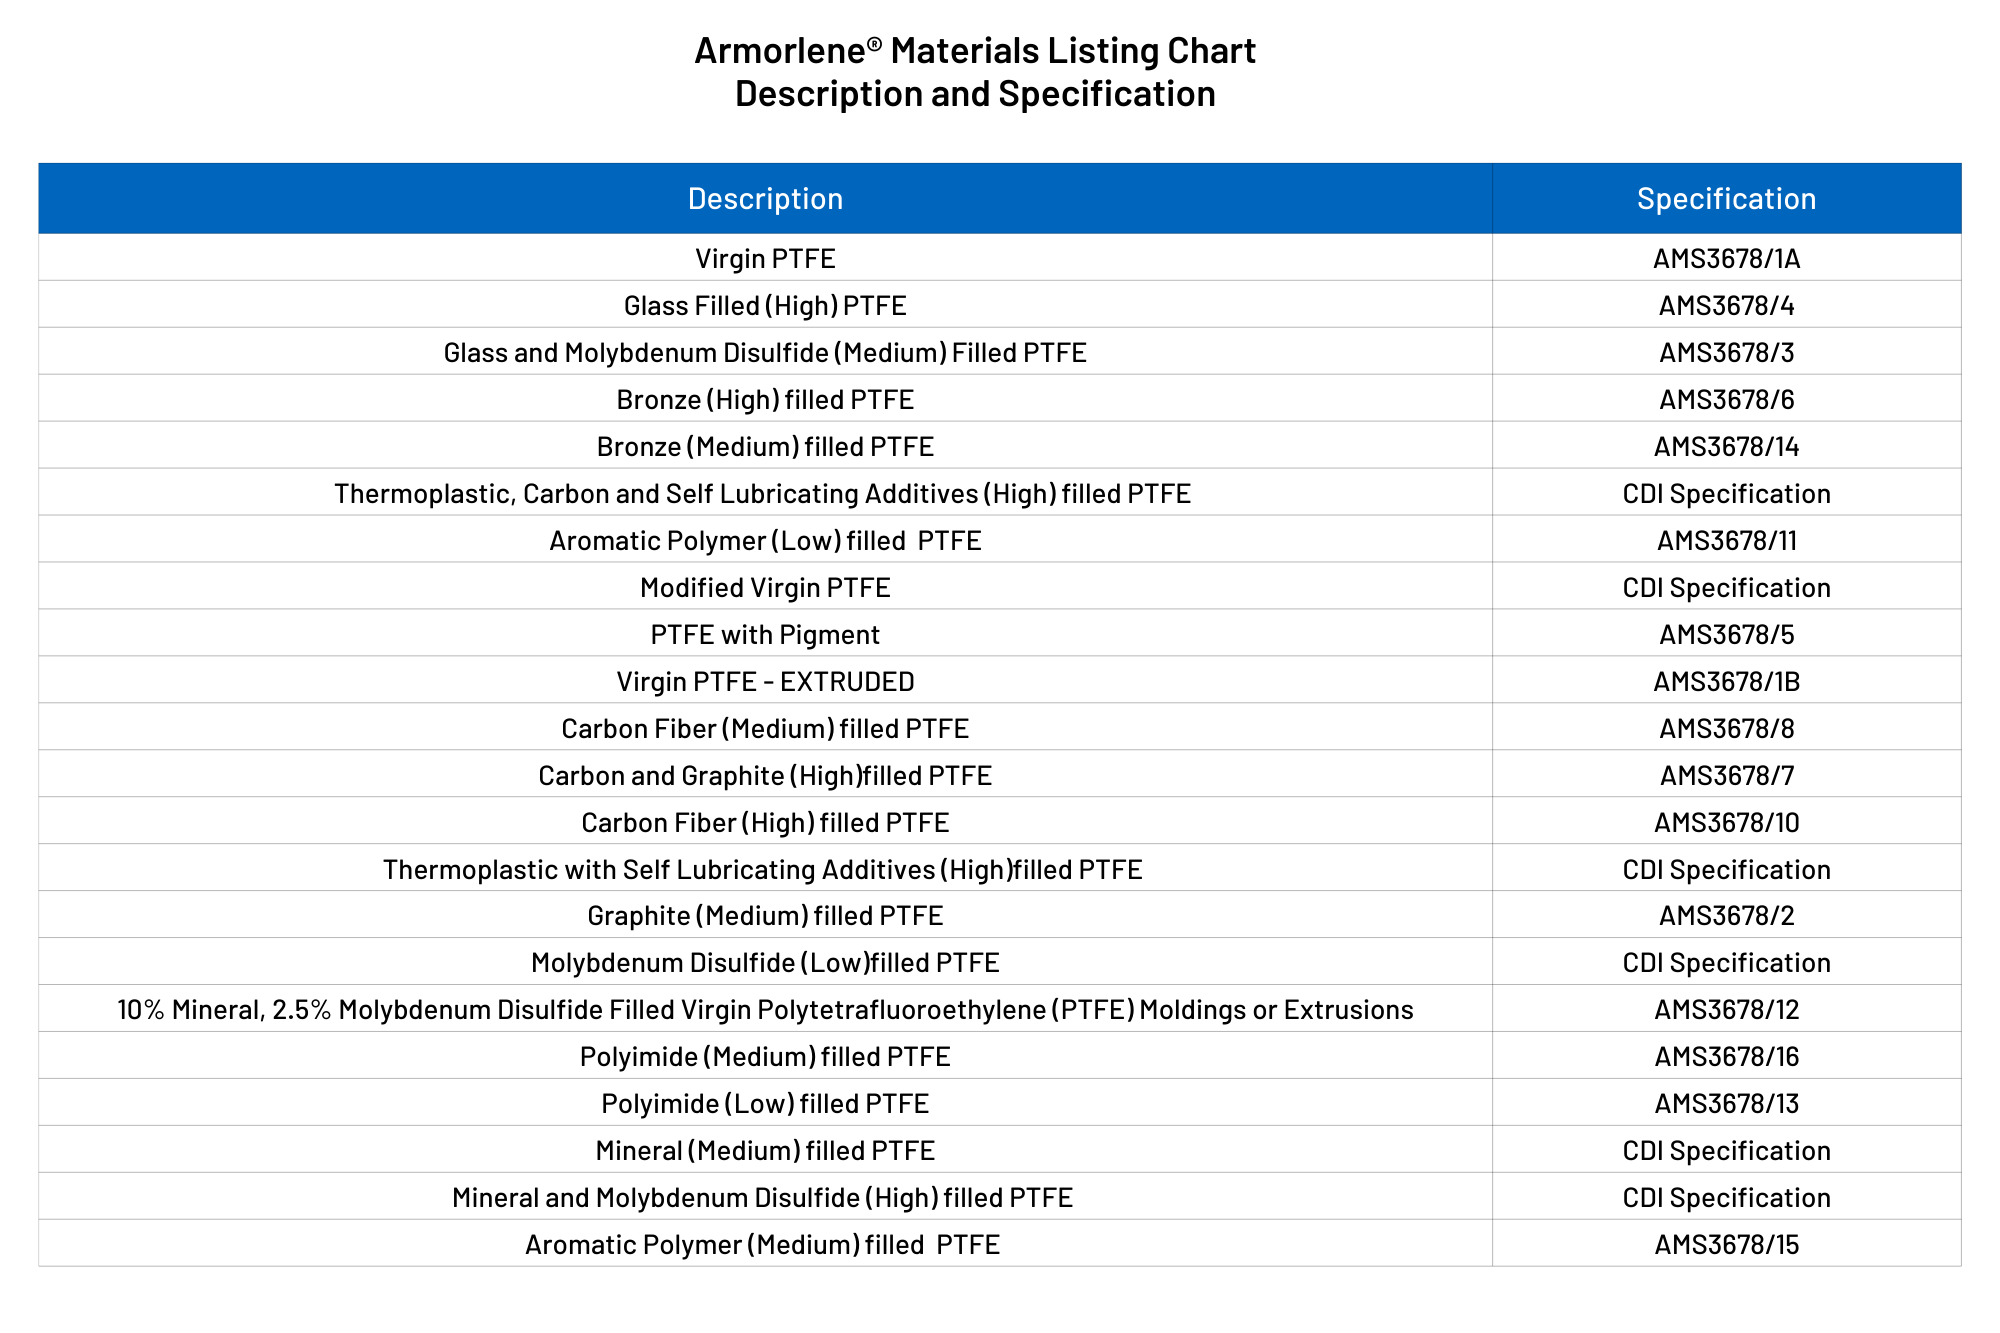 Armorlene-material-listing-chart